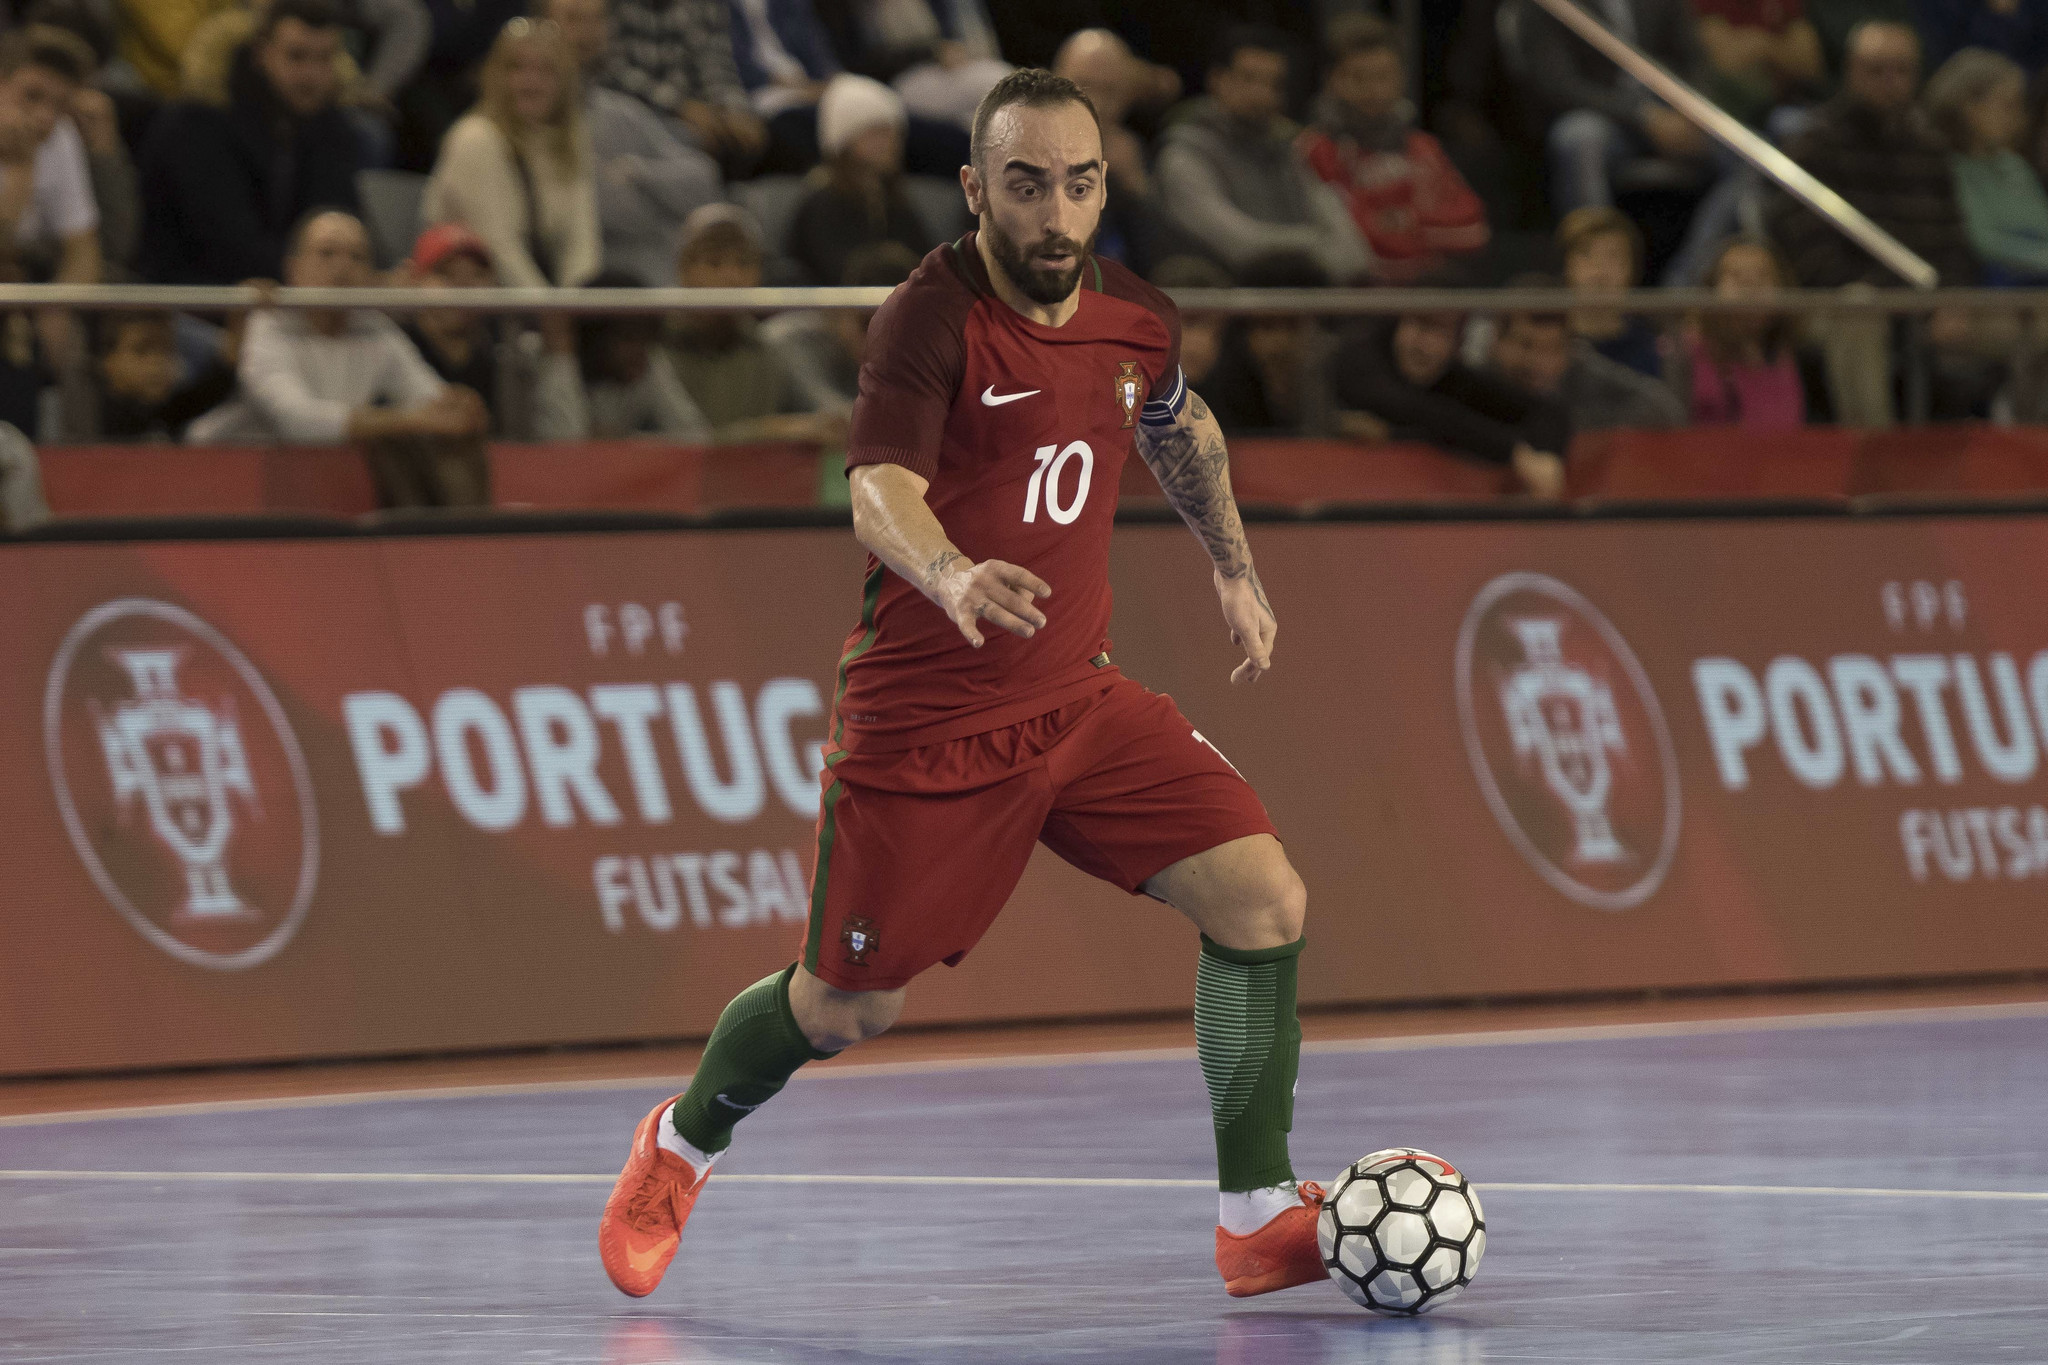 Dois portugueses candidatos a melhor jogador de futsal do mundo